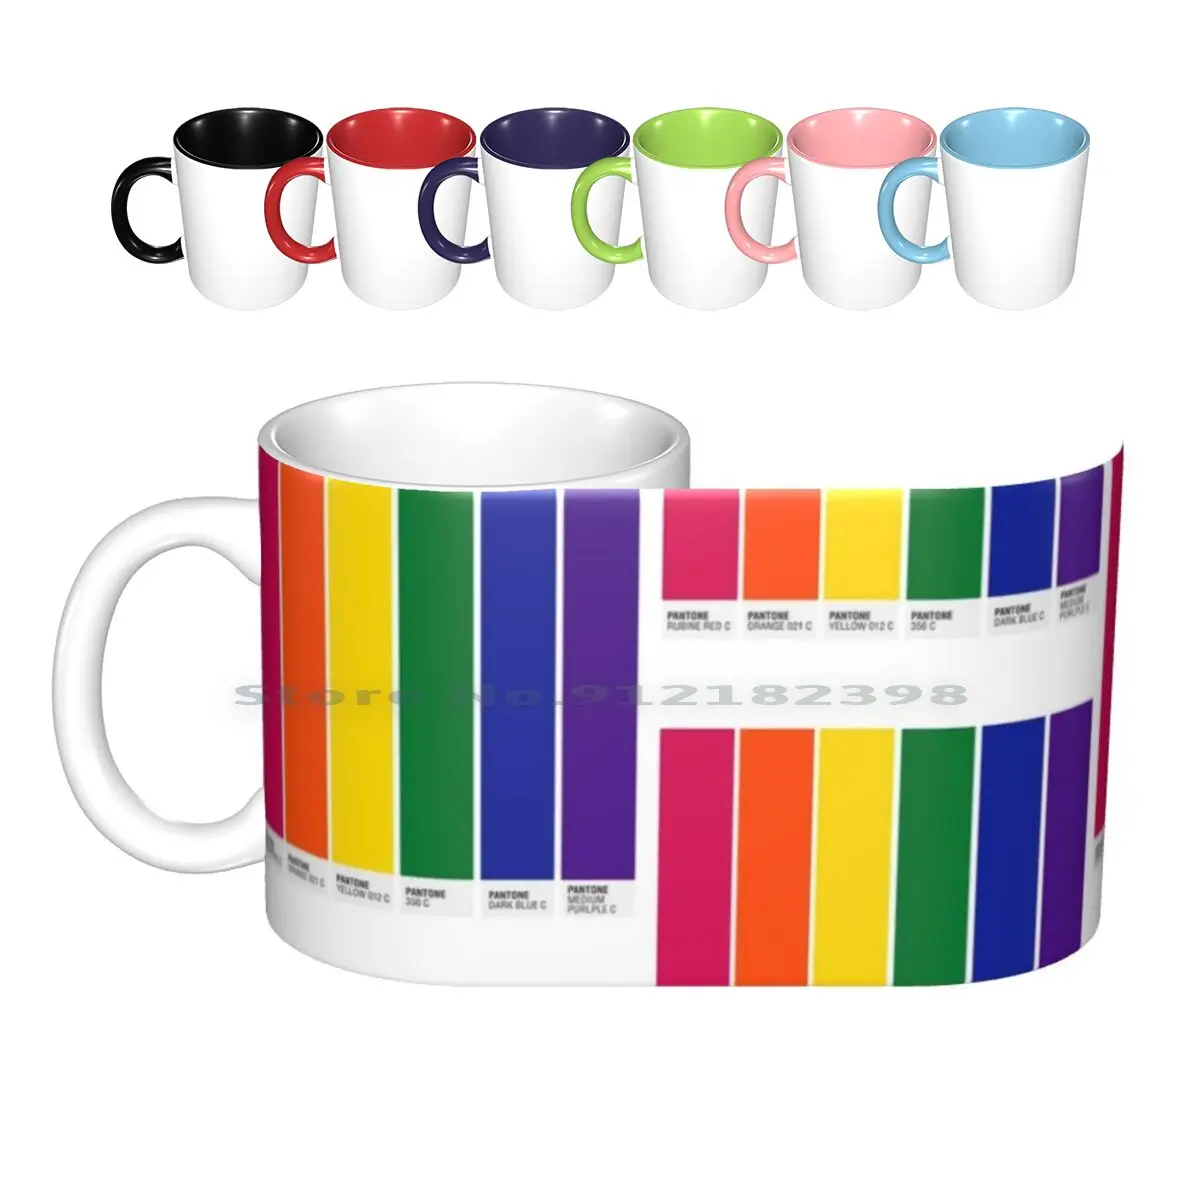 

Керамические кружки с флагом гордости Пантон, кофейные чашки, кружка для молока, чая, кружка с флагом гордости Пантон, цветные радужные разн...